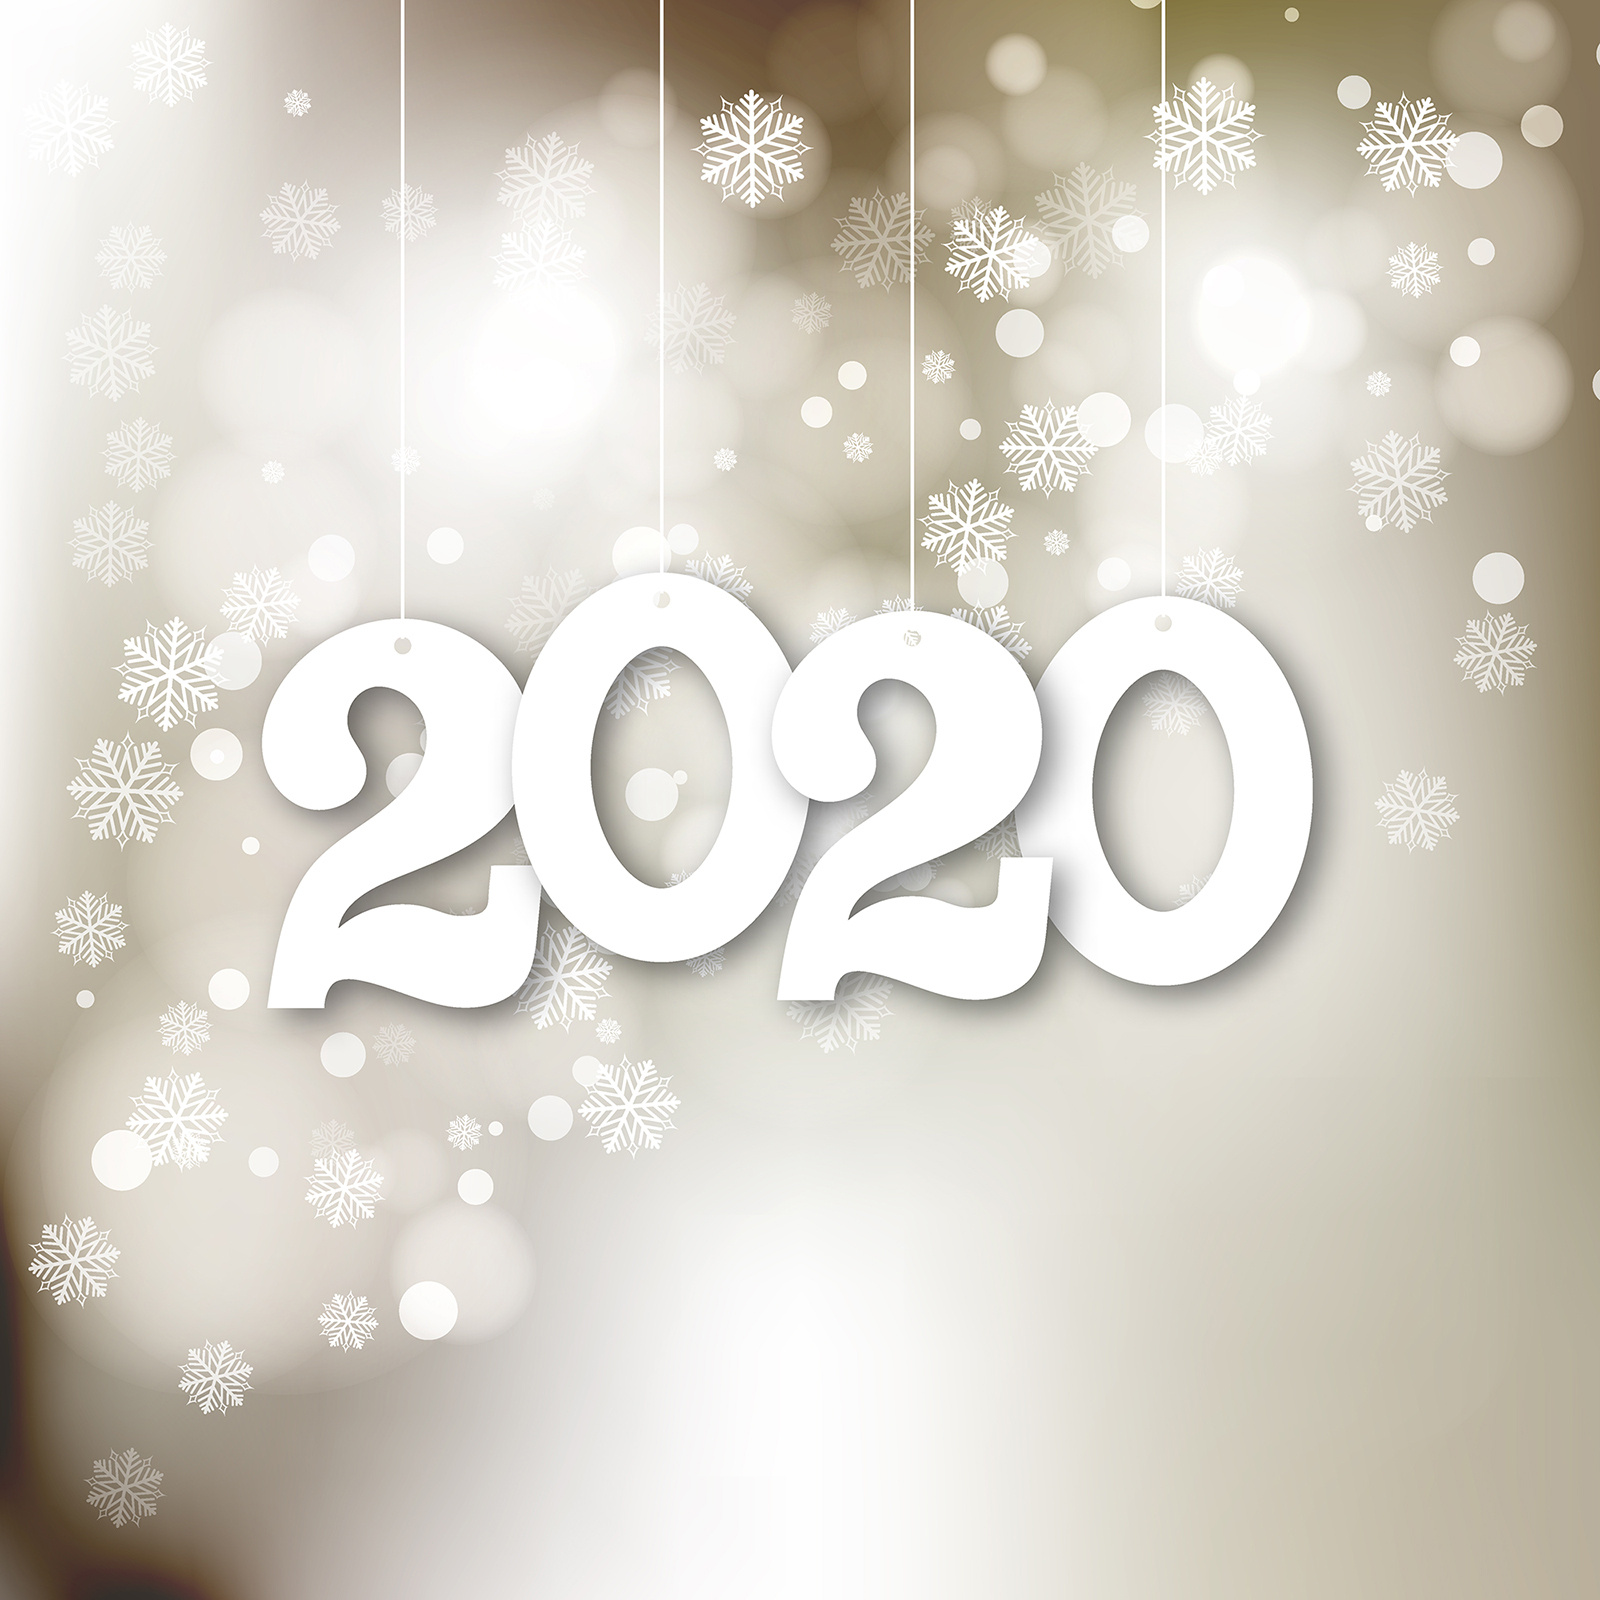 с наступающим новым 2020-м годом и рождеством!